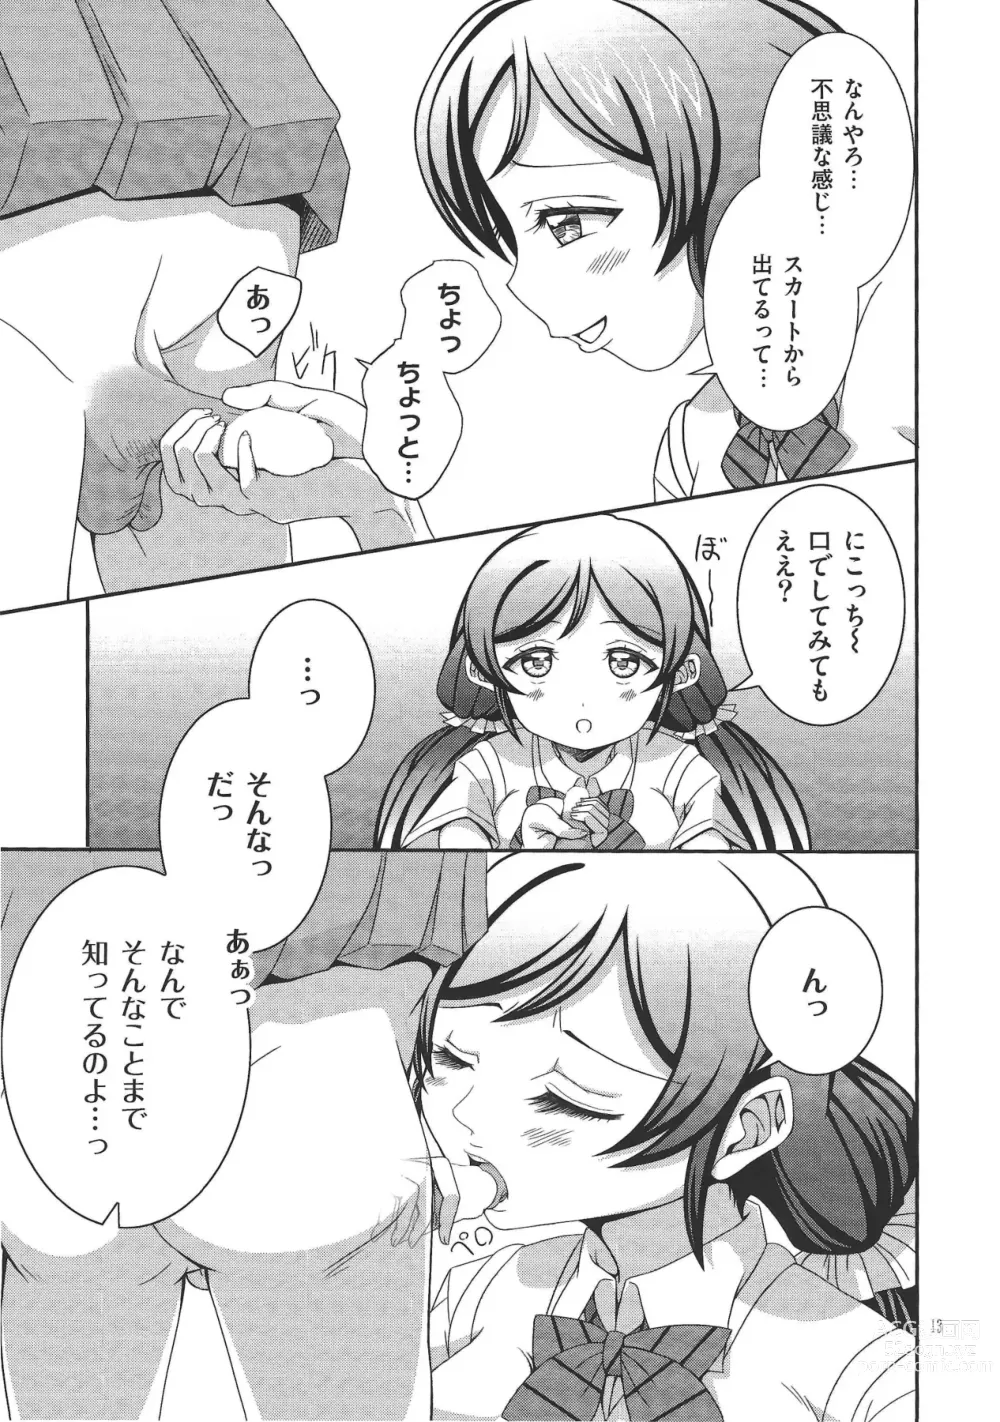 Page 12 of doujinshi Usotsuki Nico 2